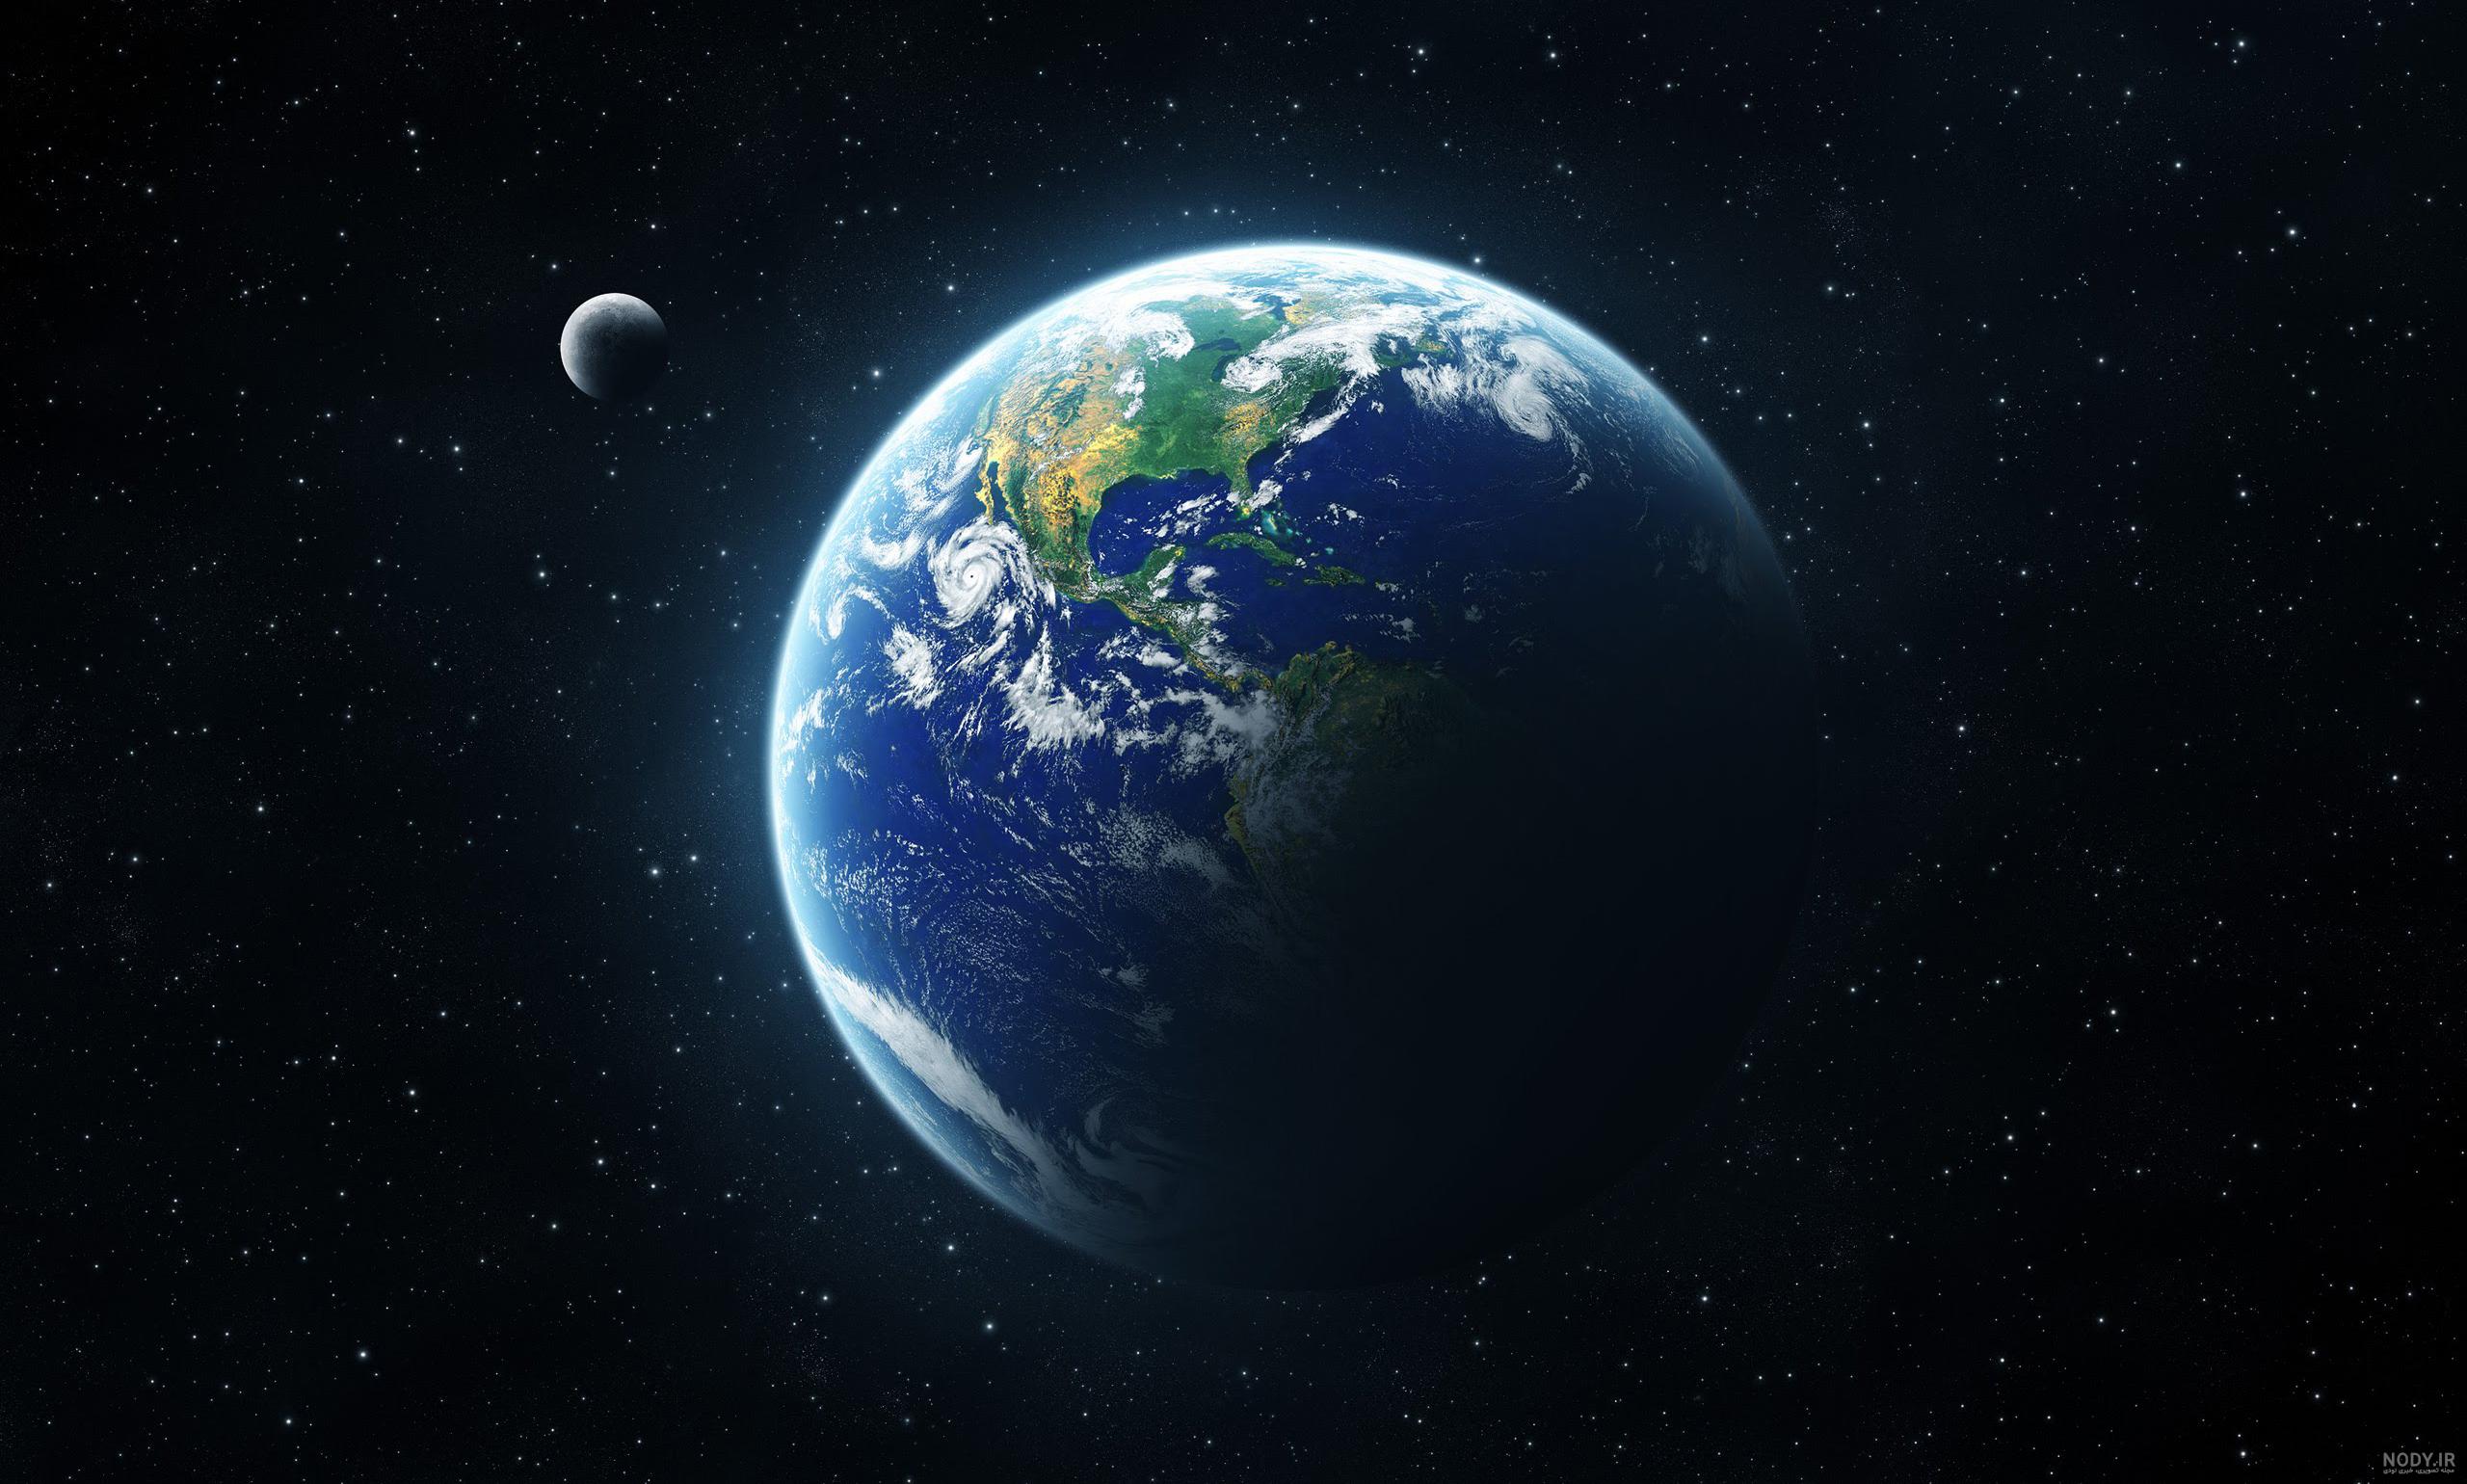 عکس کره زمین در شب برای پس زمینه